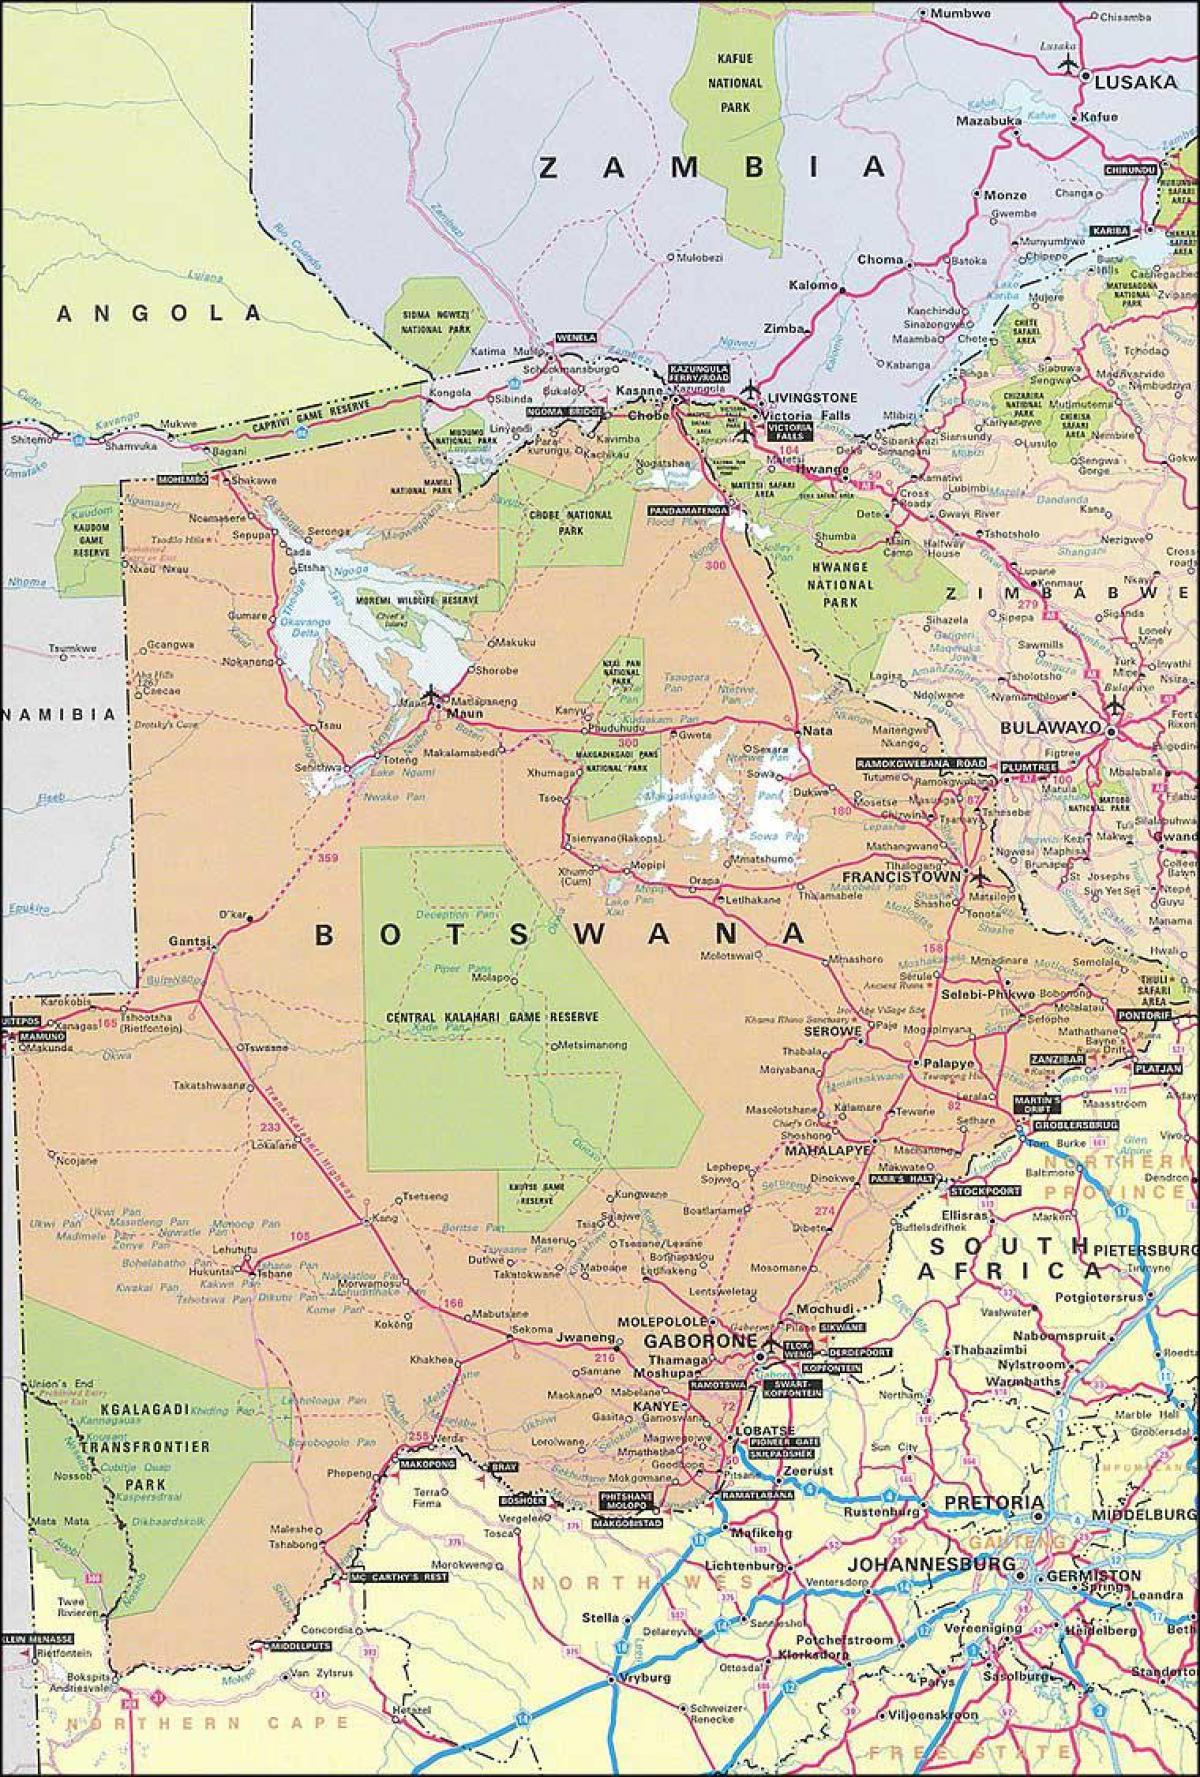 kort af Botswana